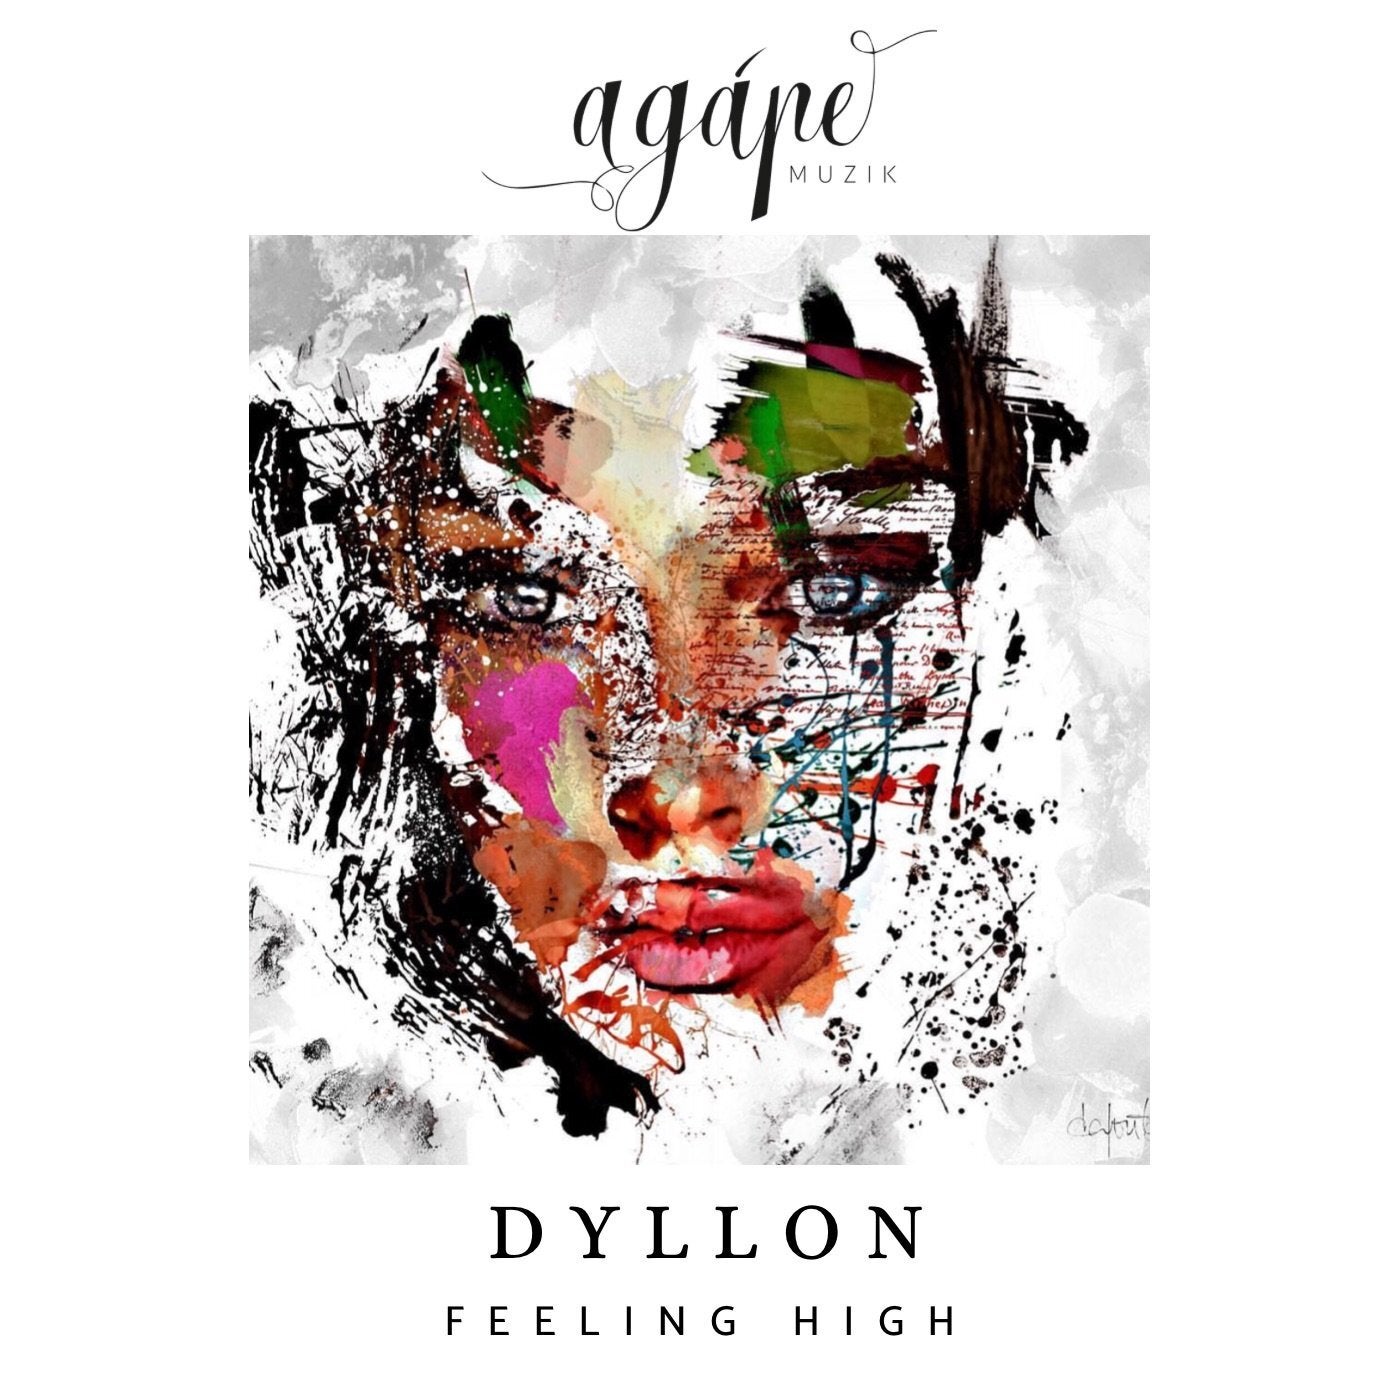 Dyllon - Feeling High [Agape Muzik]